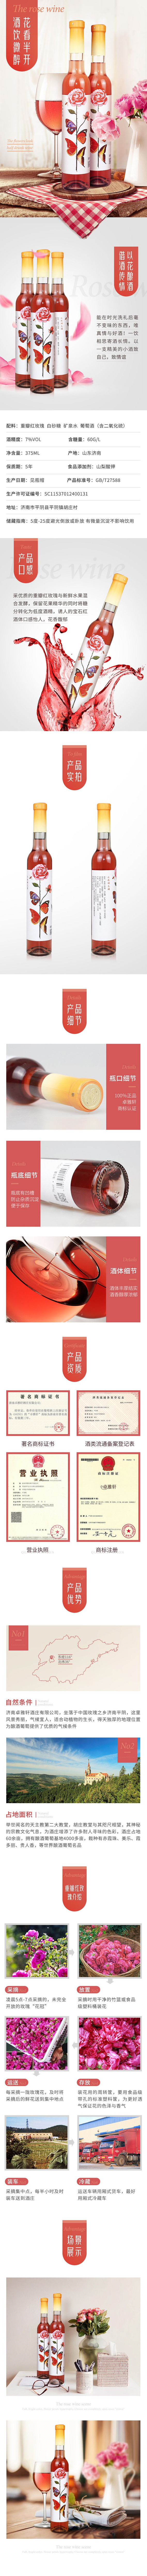 私人红酒定制价格_济南卓雅轩葡萄酒、香槟-山东卓雅轩酒业销售有限公司